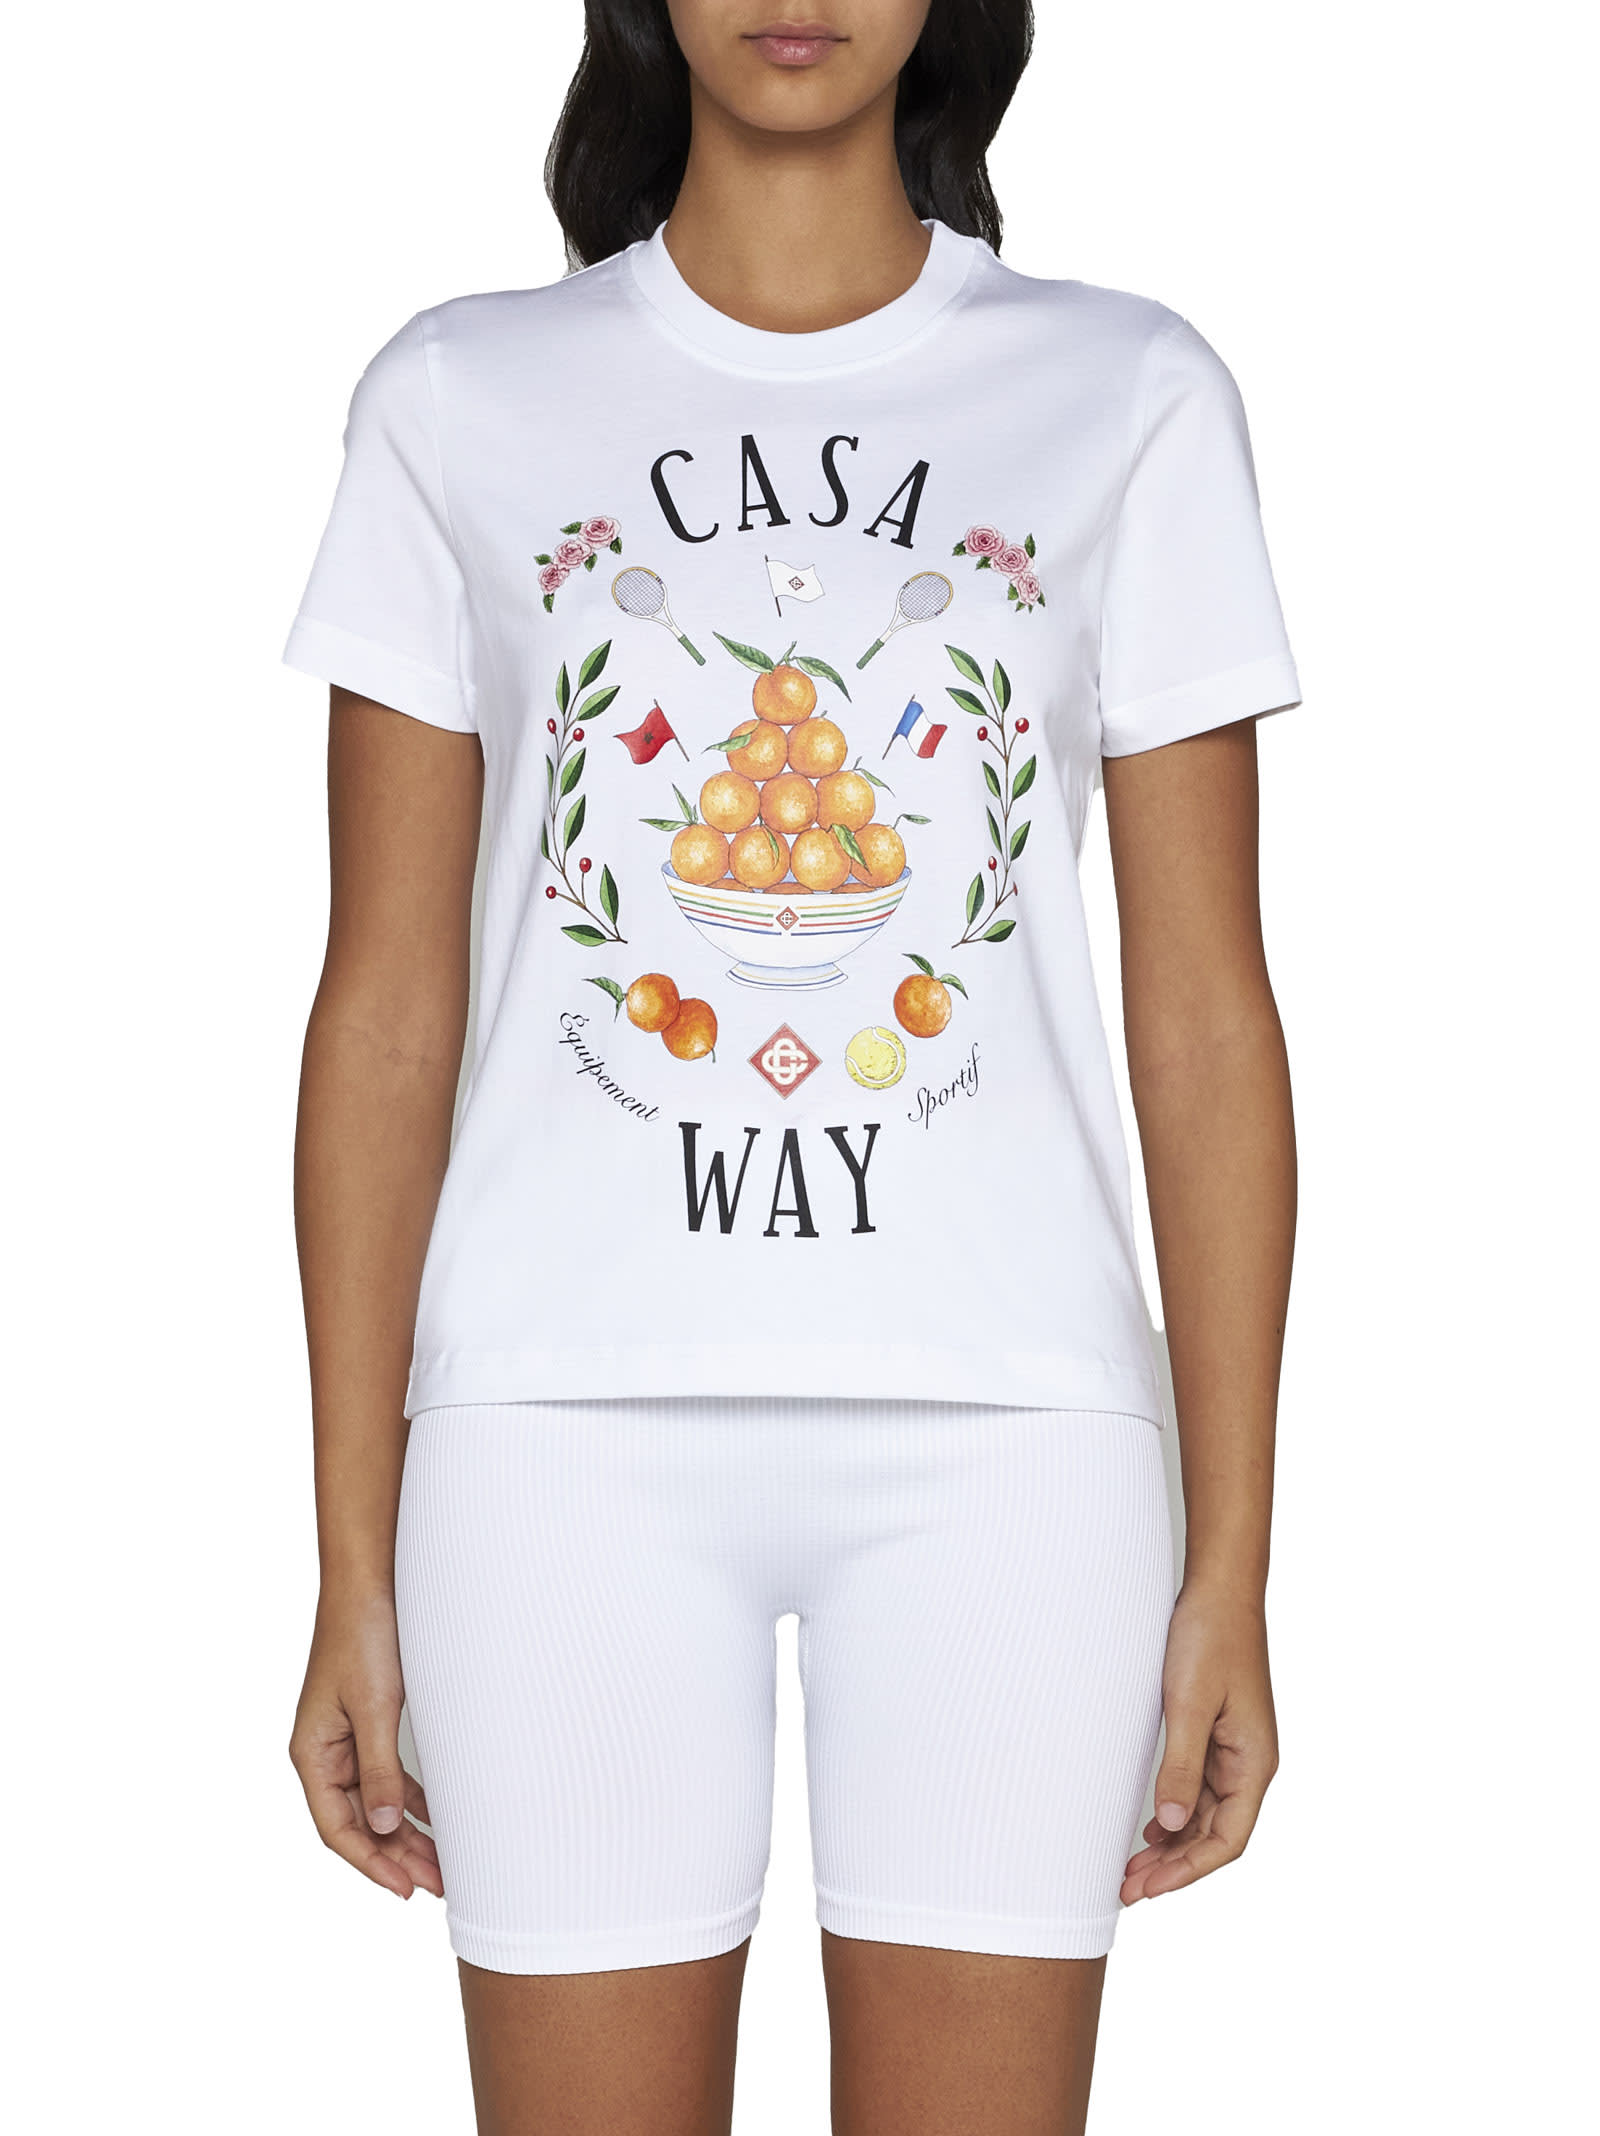 Shop Casablanca T-shirt In Casa Way